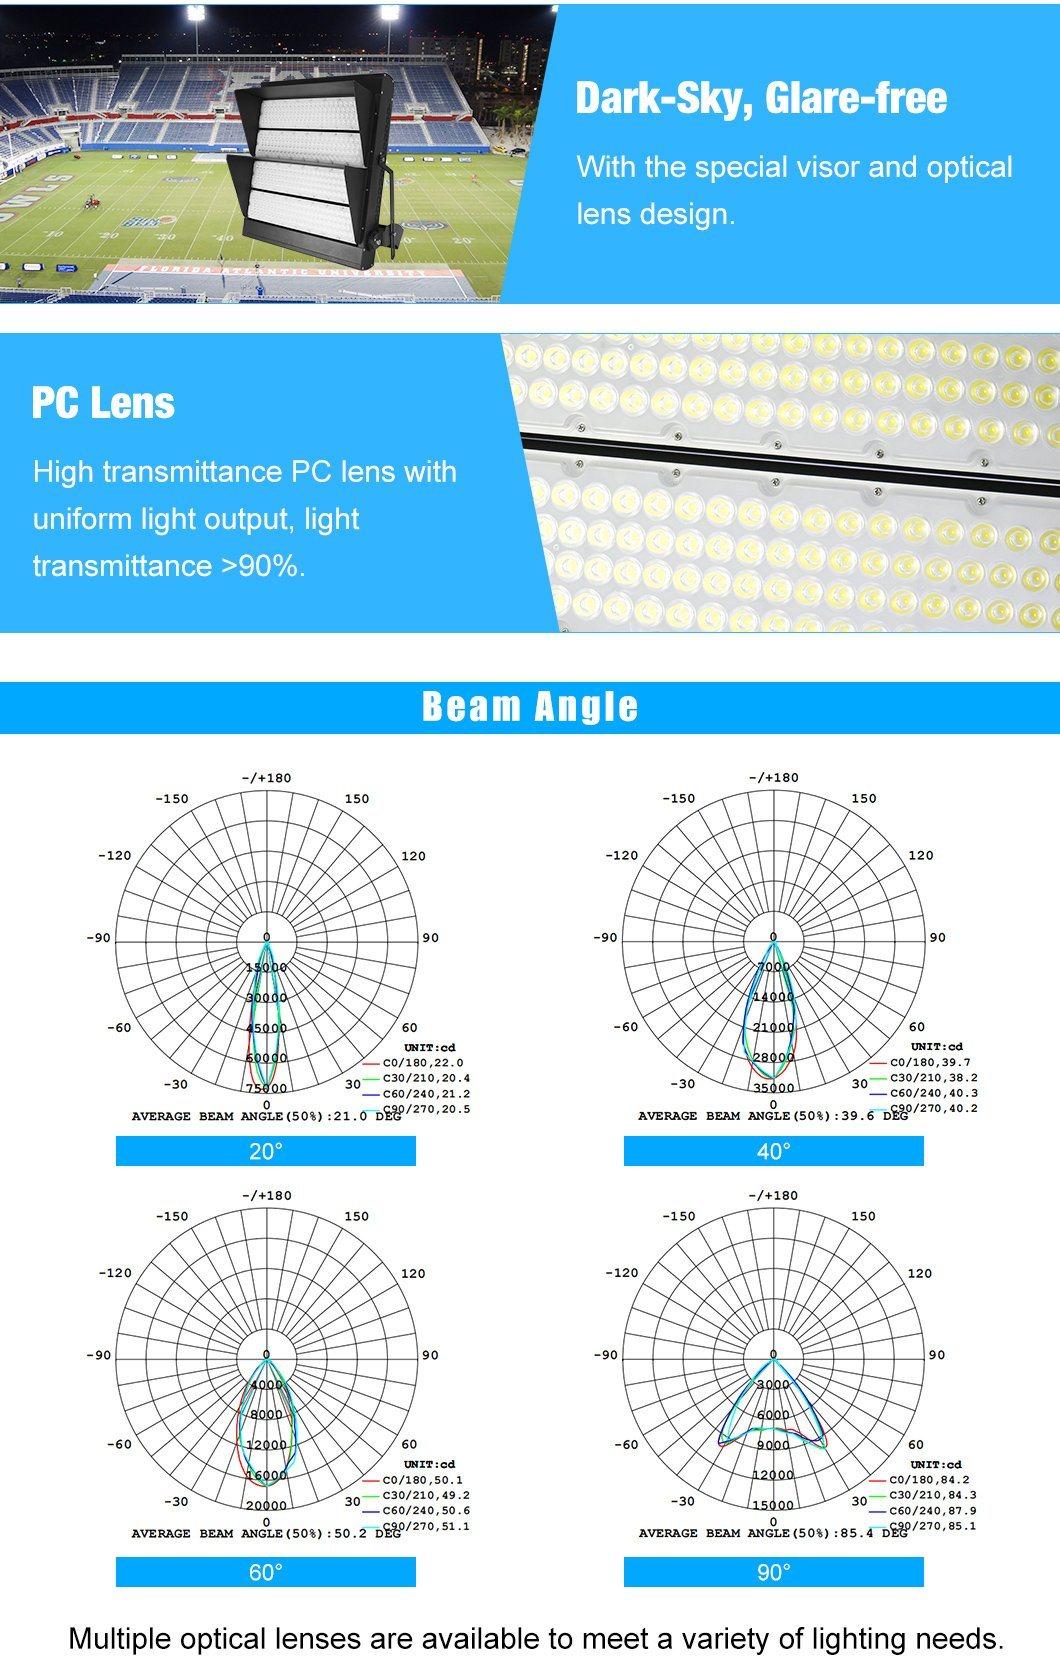 Wholesale Manufacturer 1000W Stadium LED Light for T 5 Year Warranty 100W LED Stadium Light